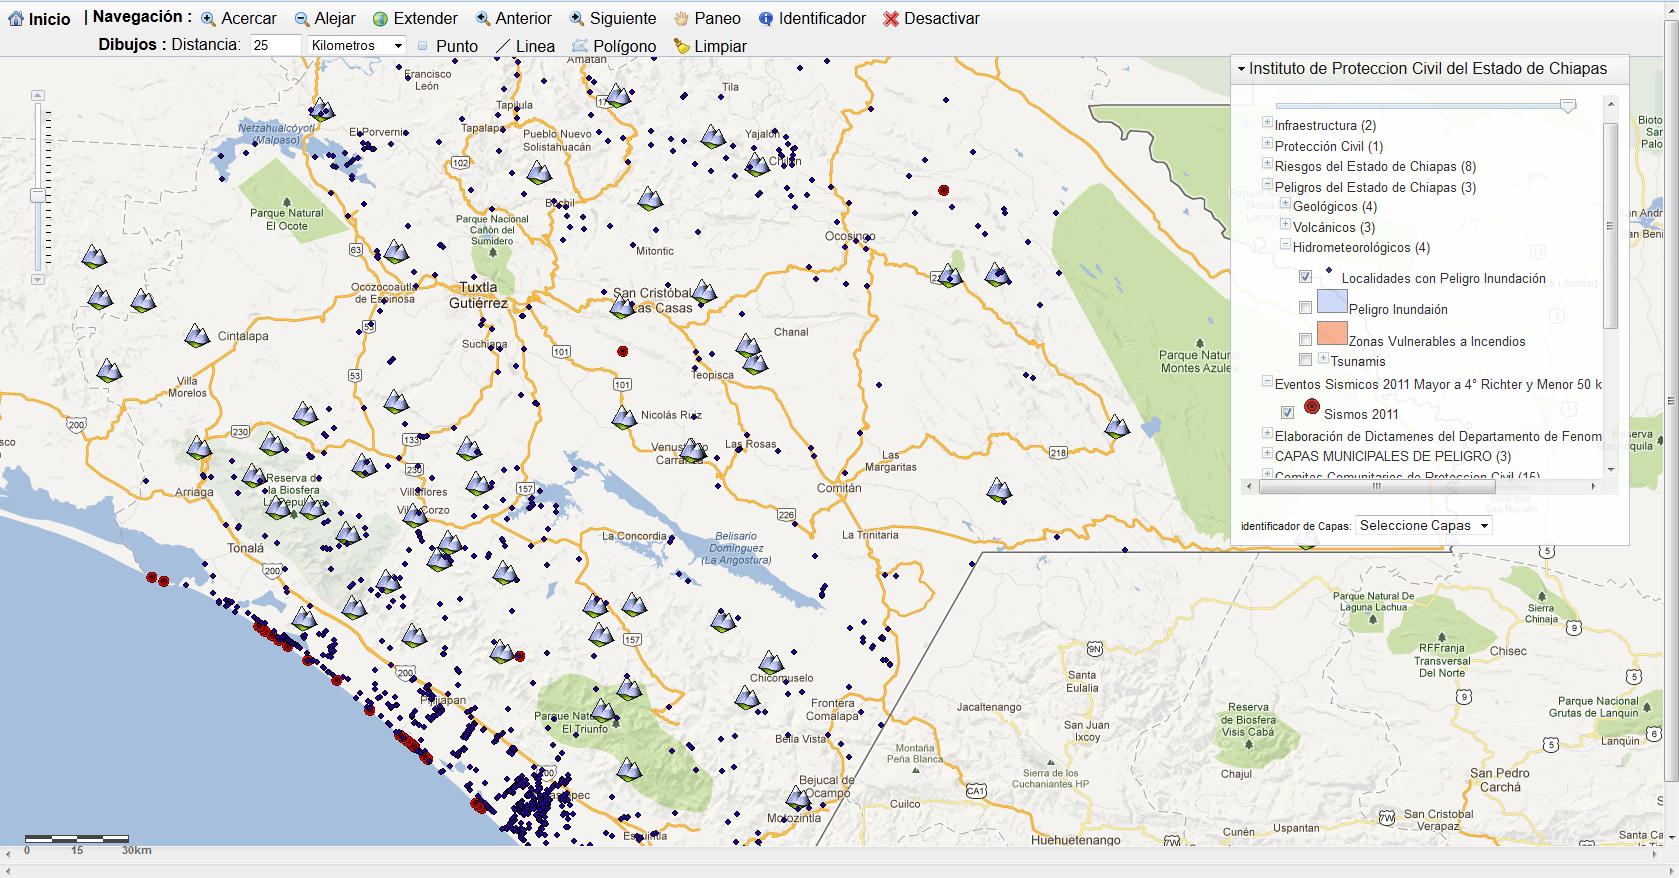 Atlas de Riesgos de Chiapas en línea